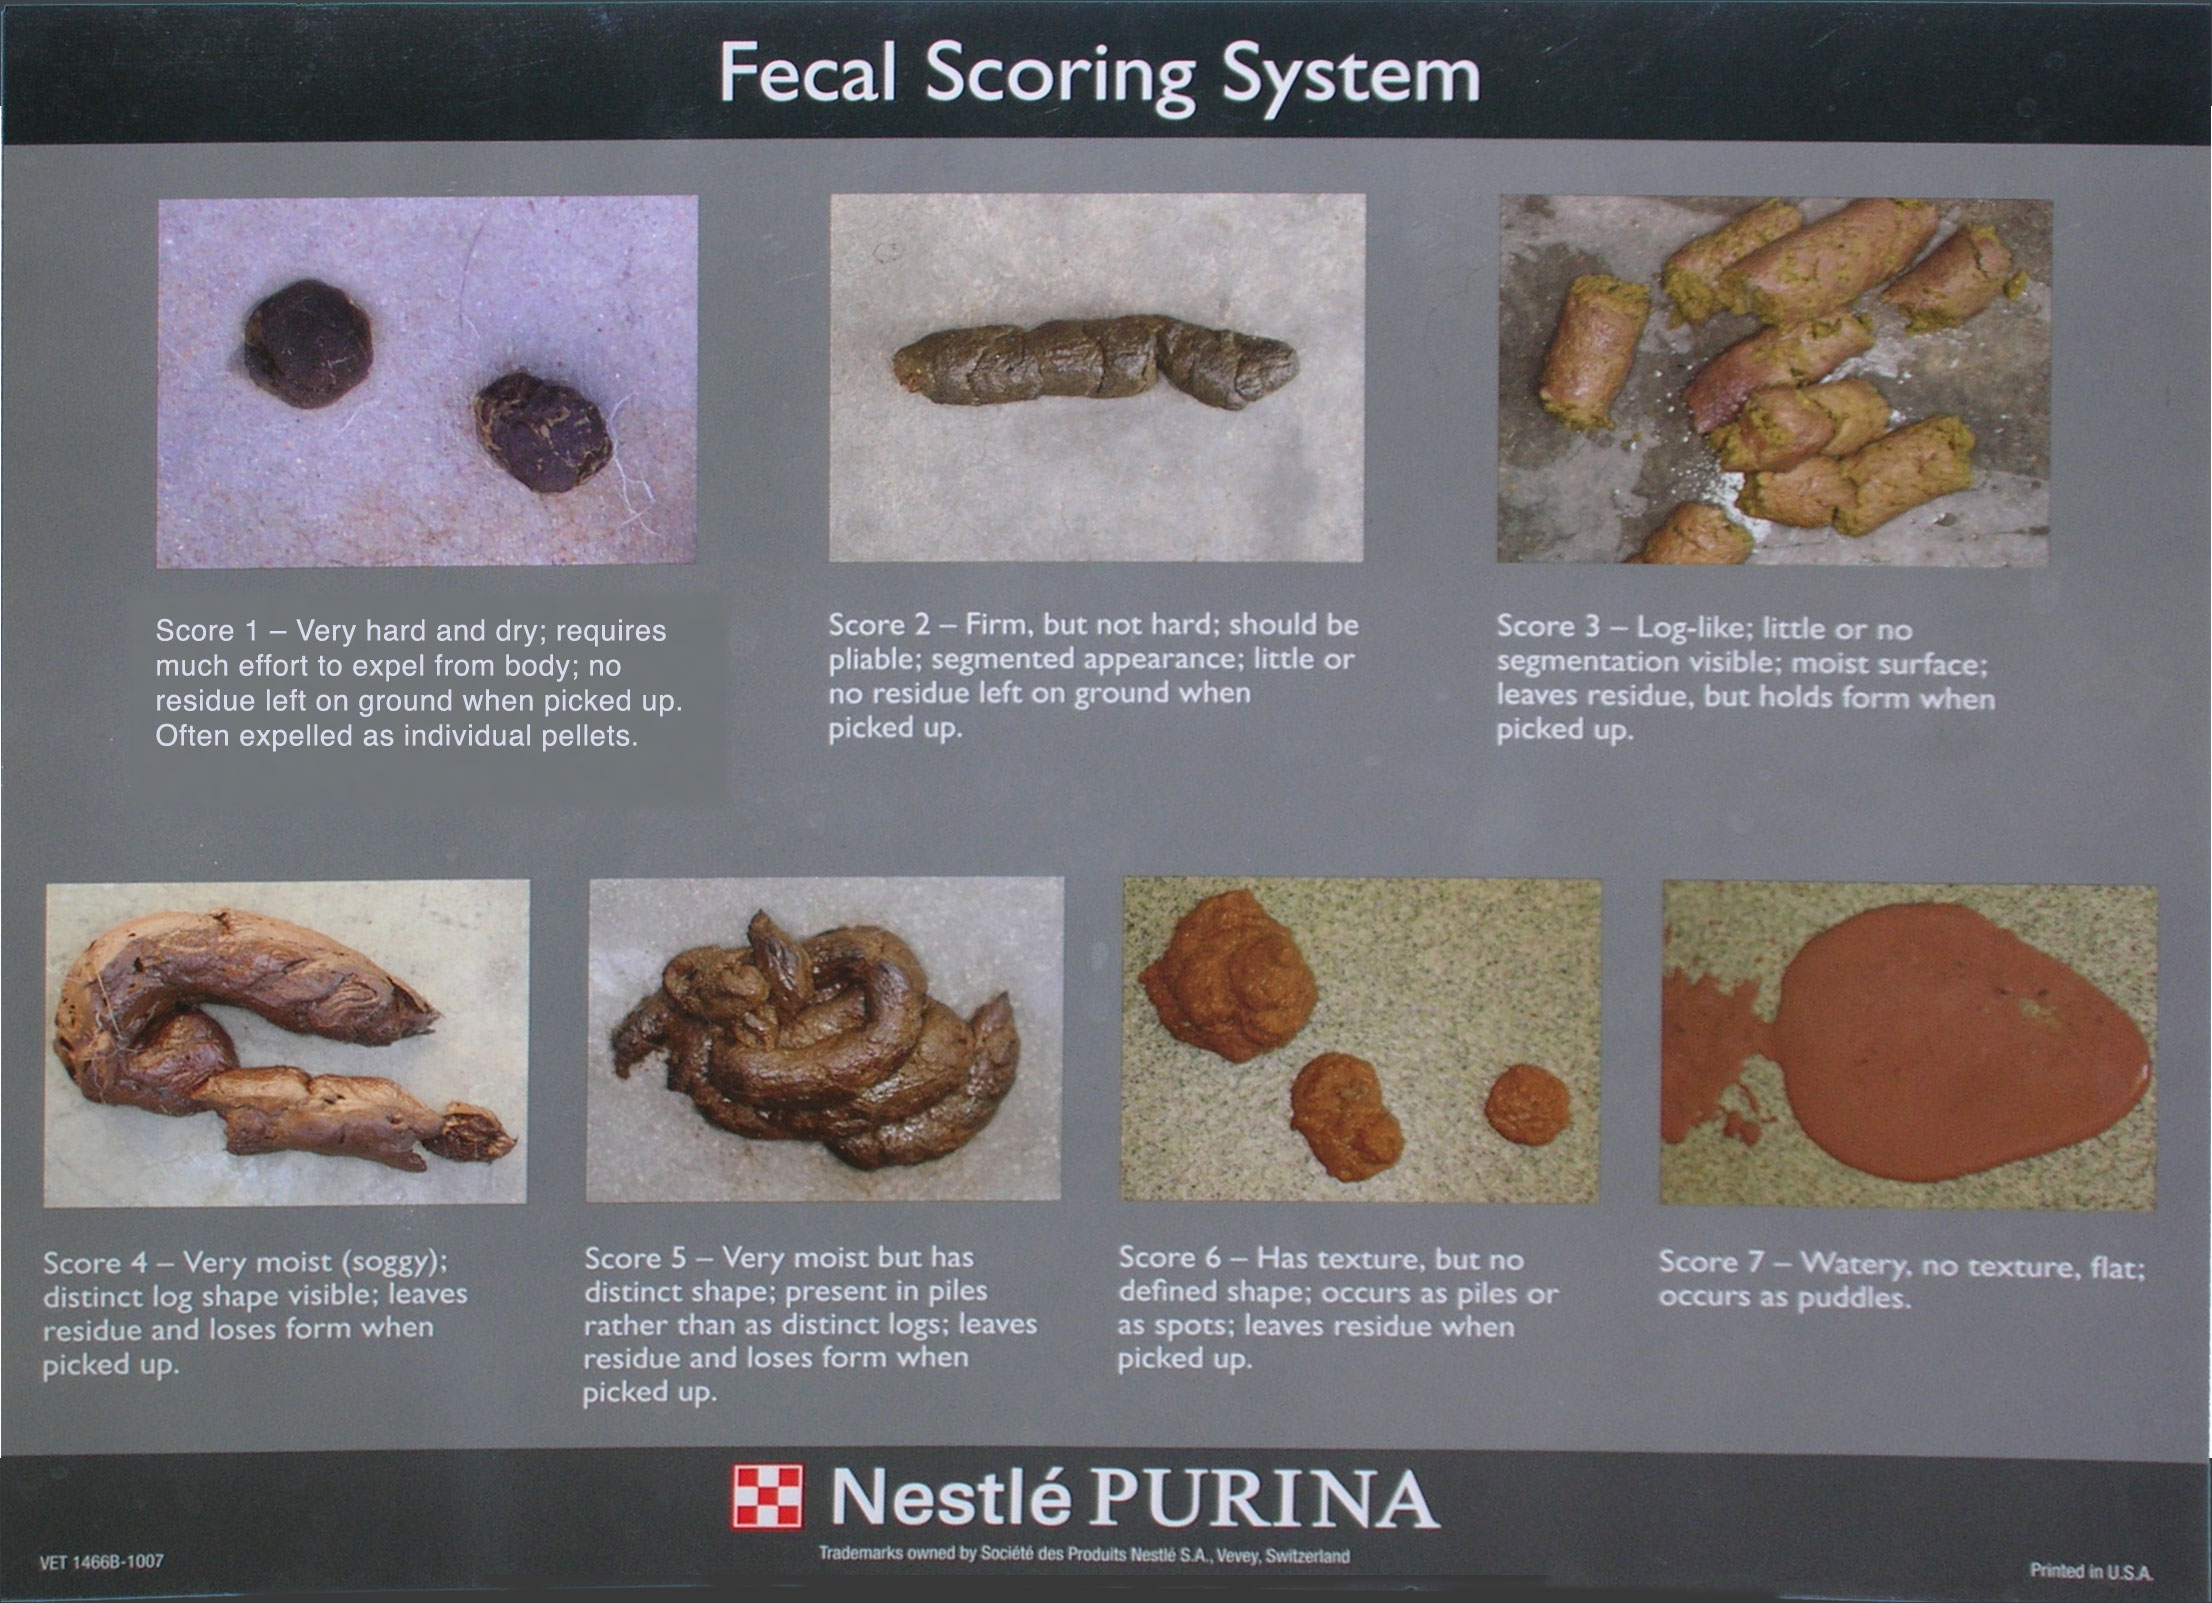 Fecal Scoring System